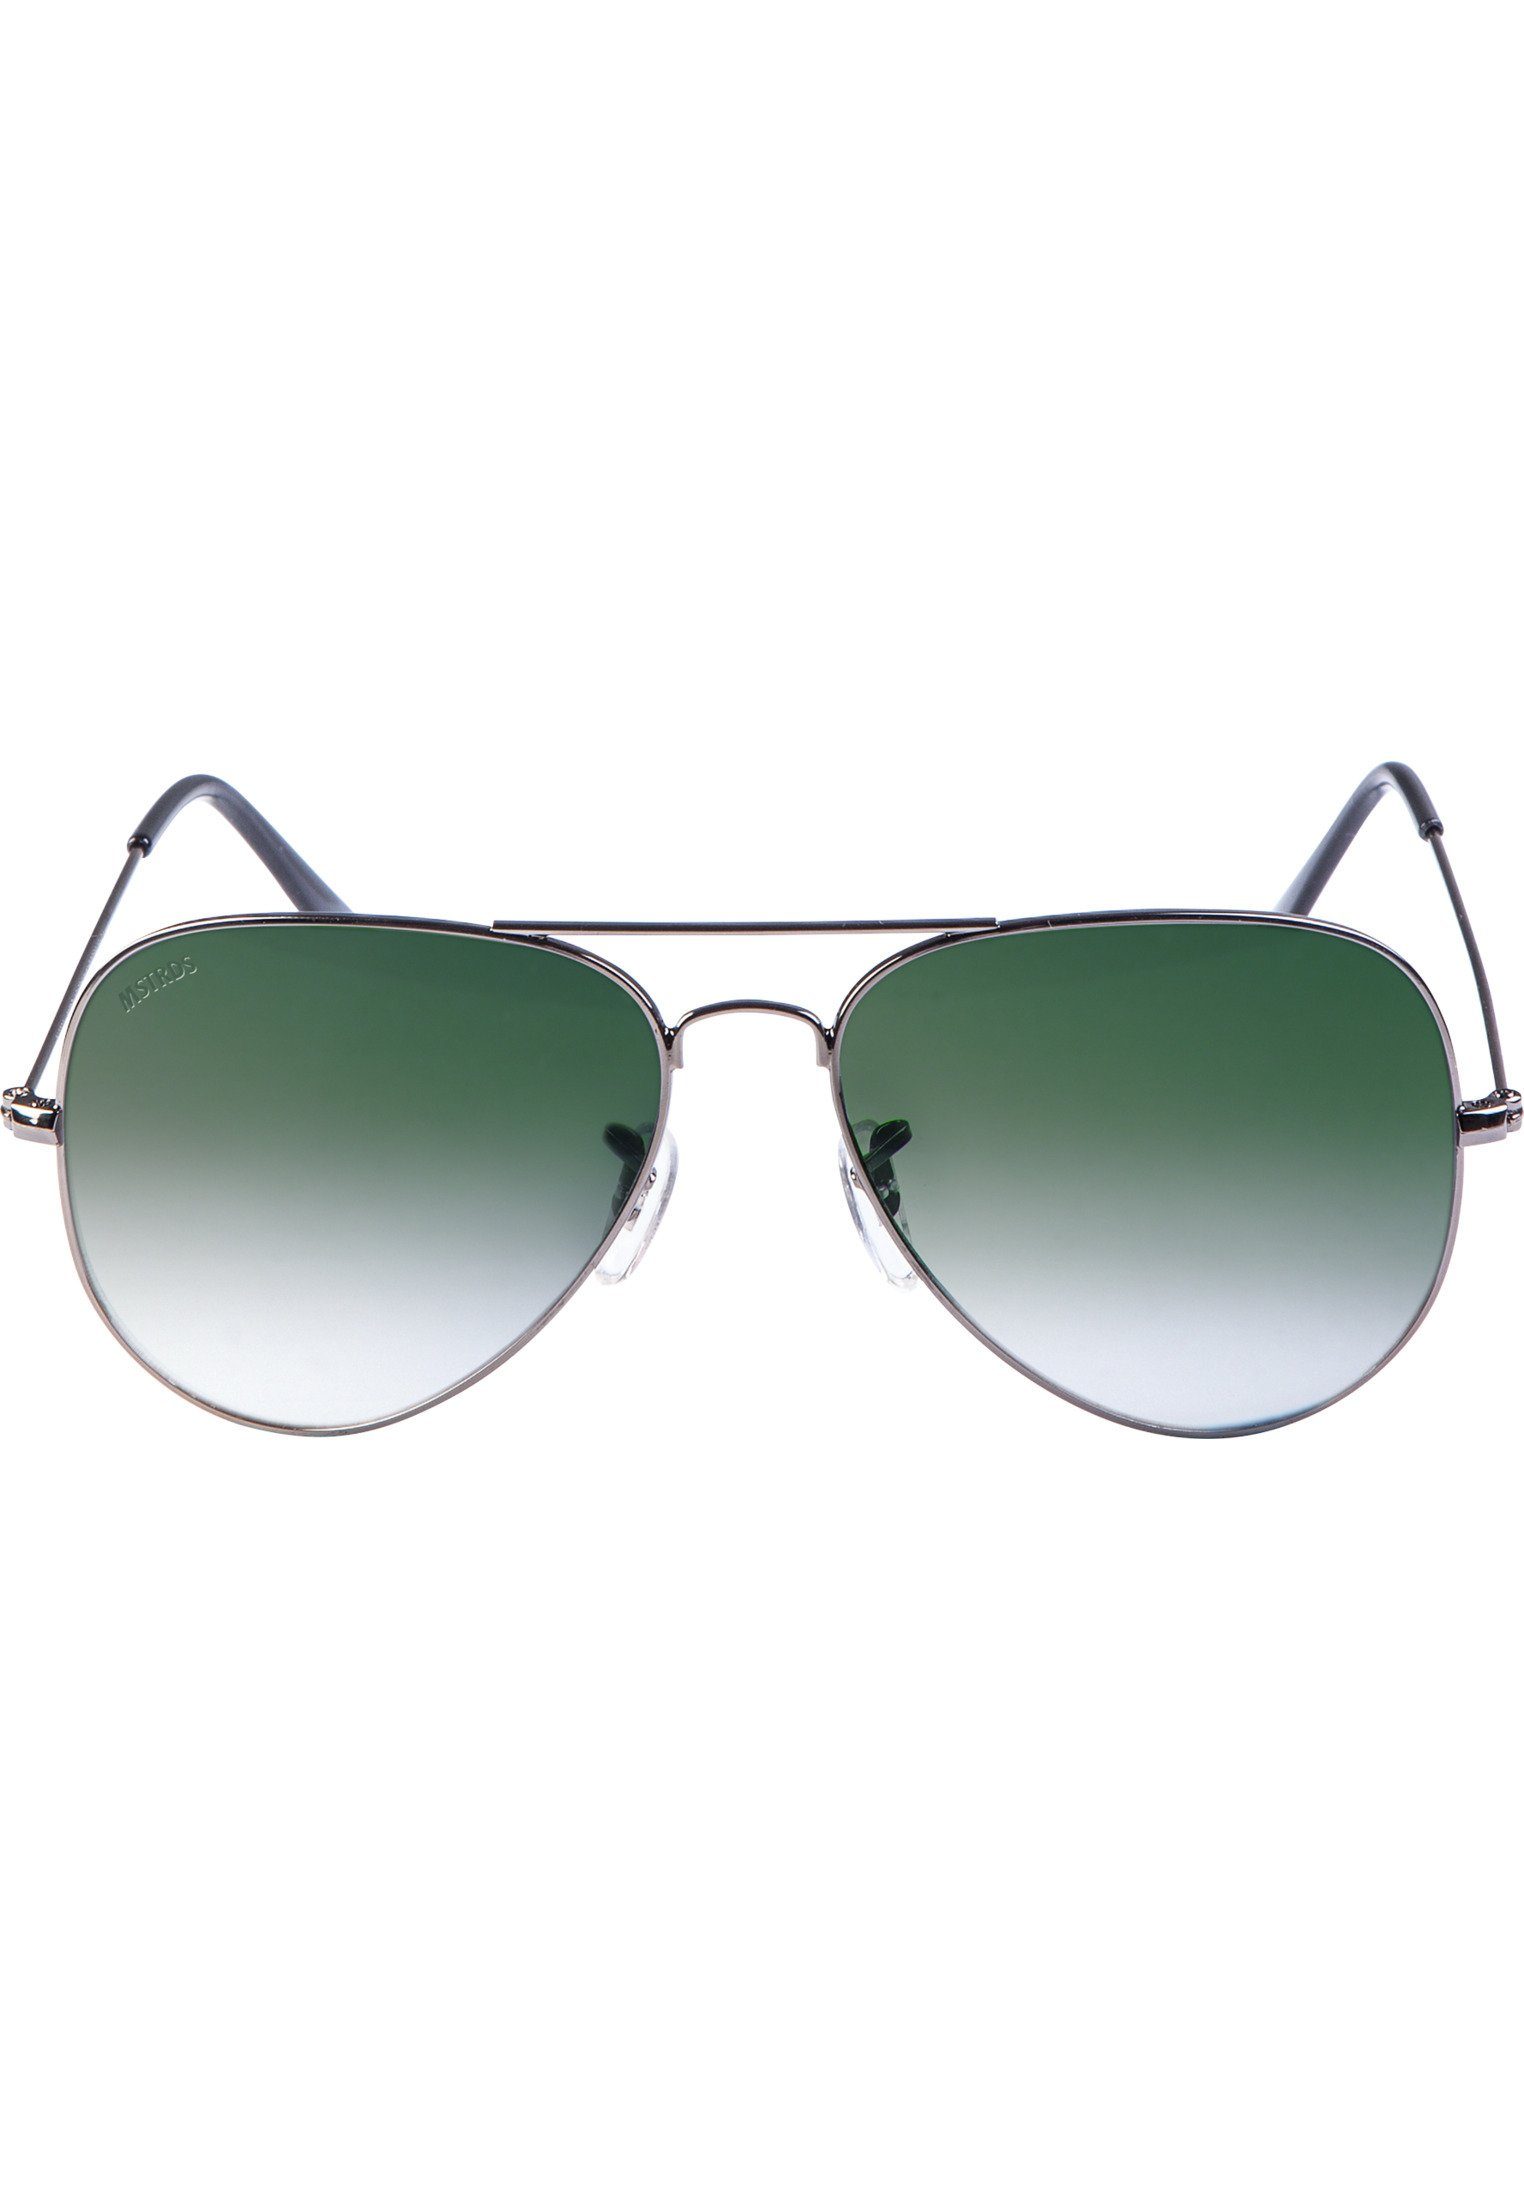 Beförderungsantrag MSTRDS Sonnenbrille Accessoires Sunglasses PureAv Youth gun/green